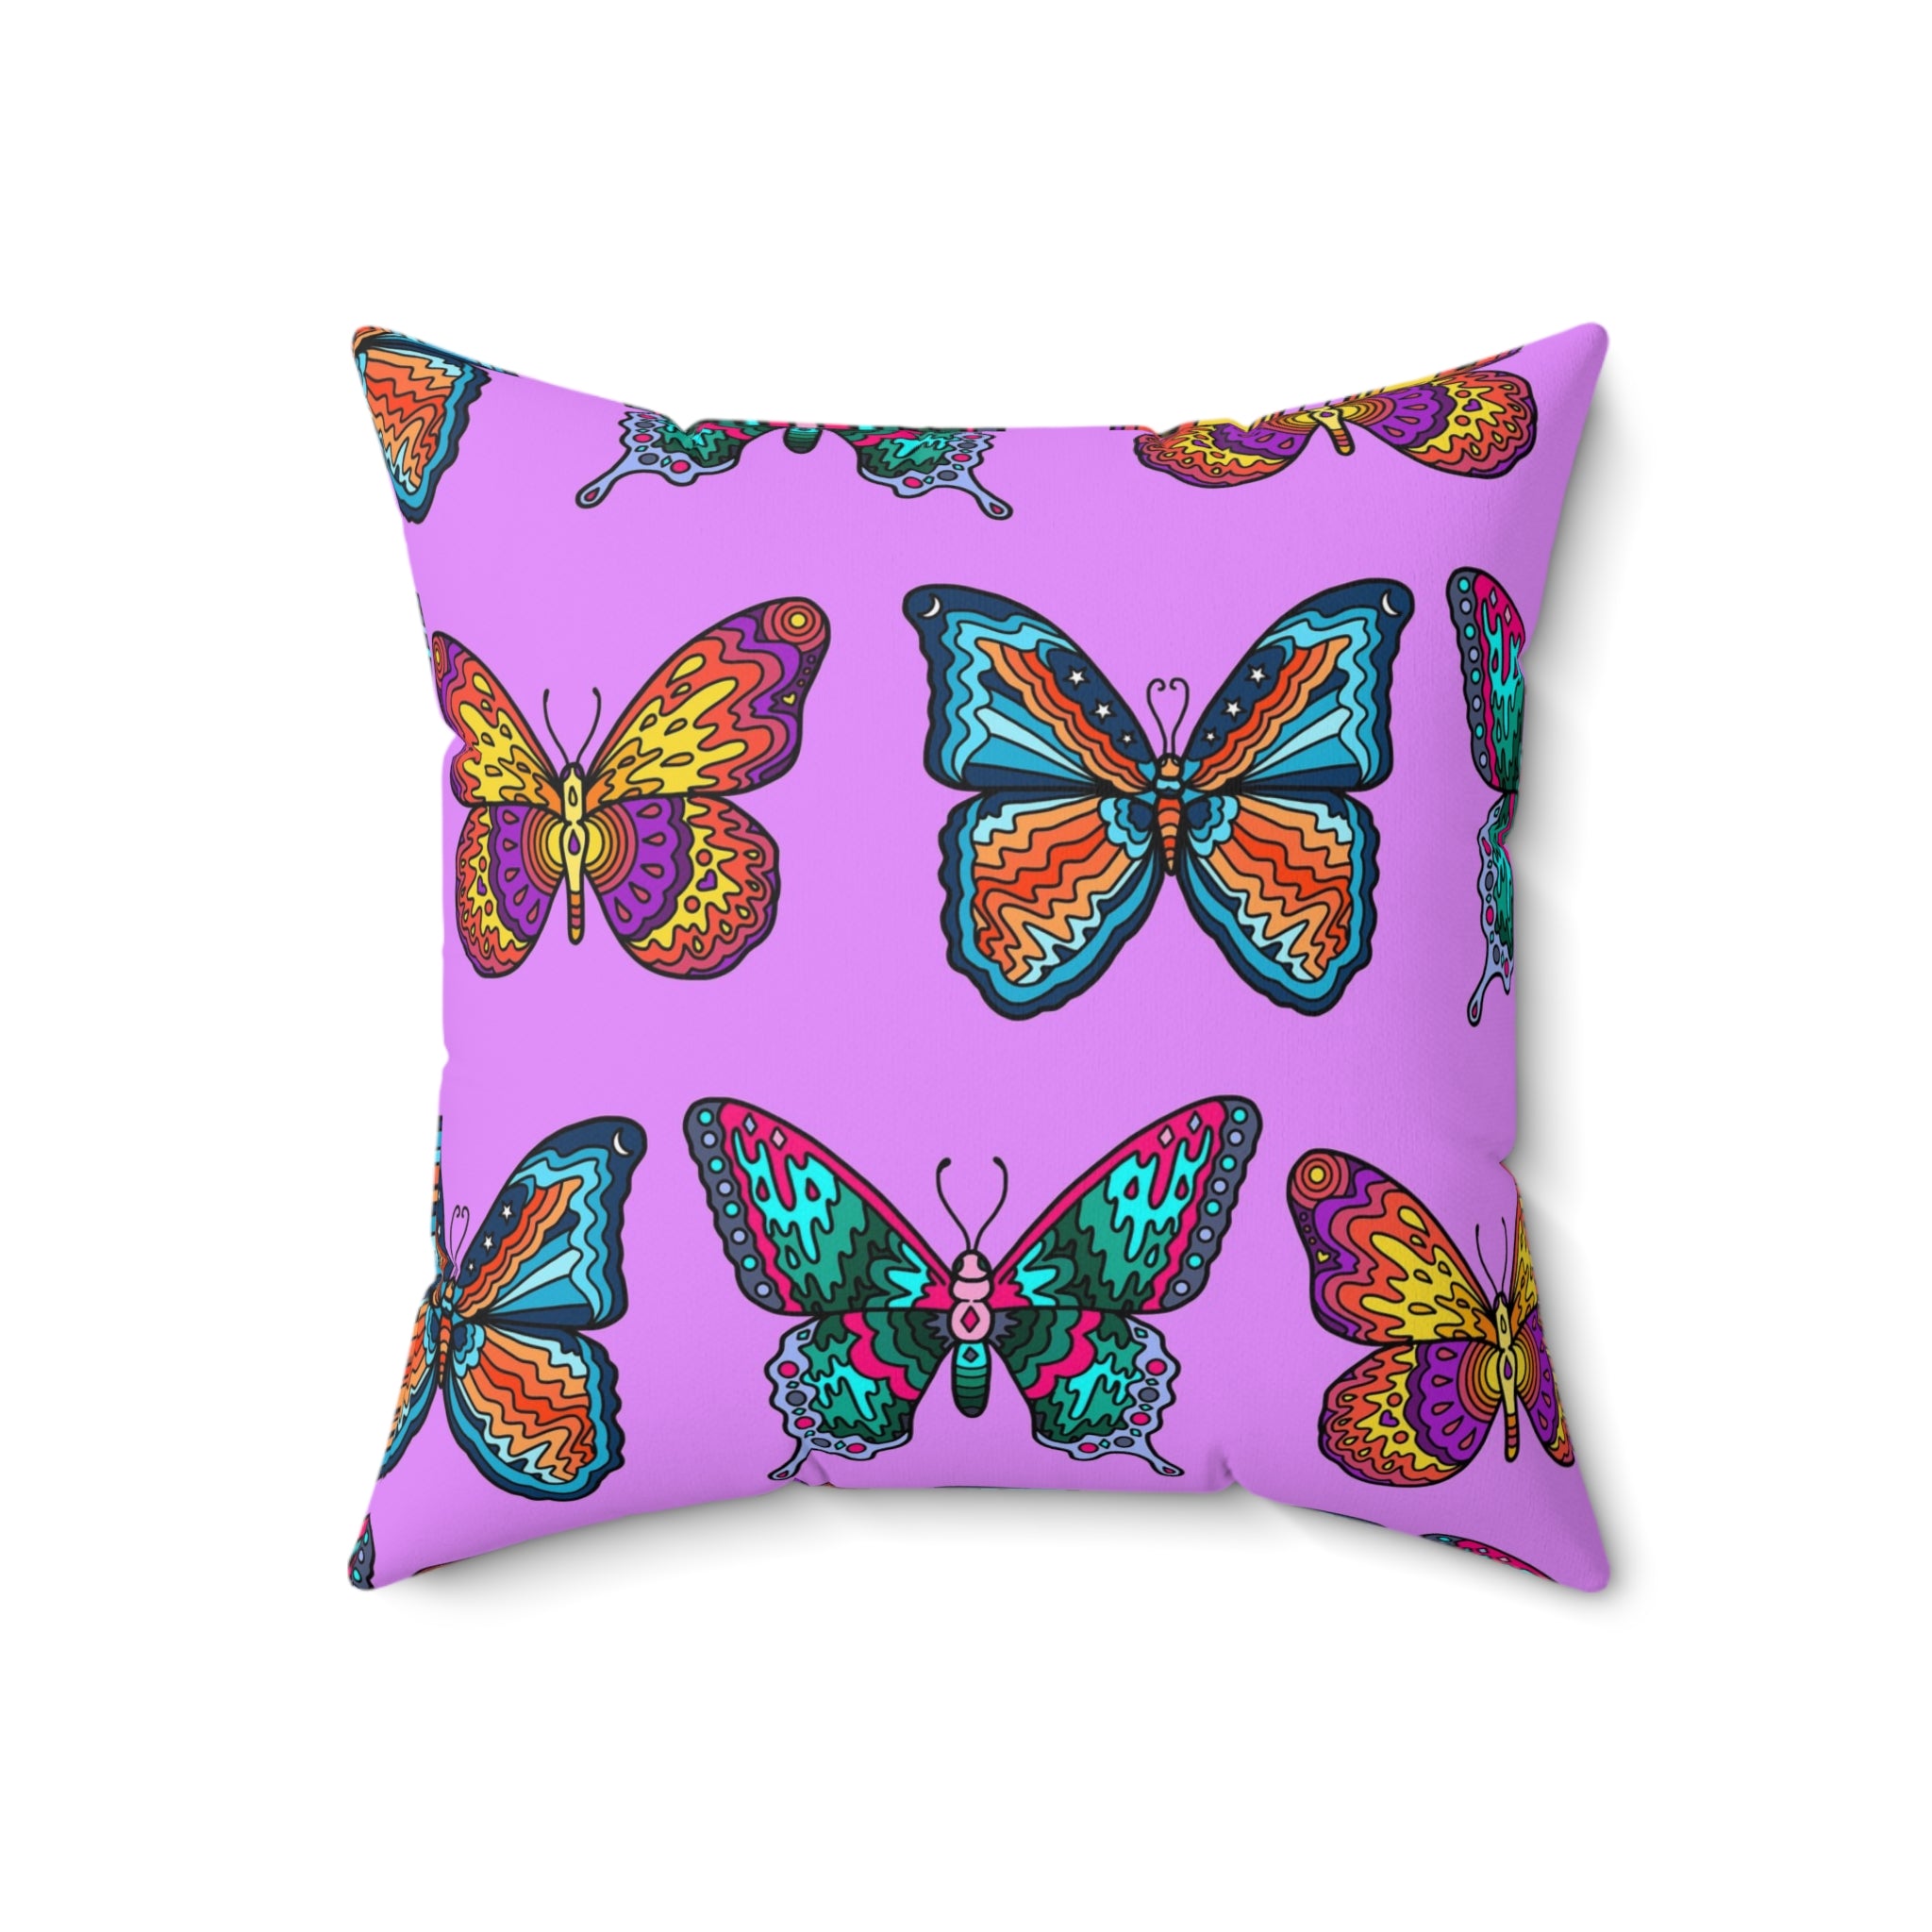 Mosaic Butterflies Throw Pillow